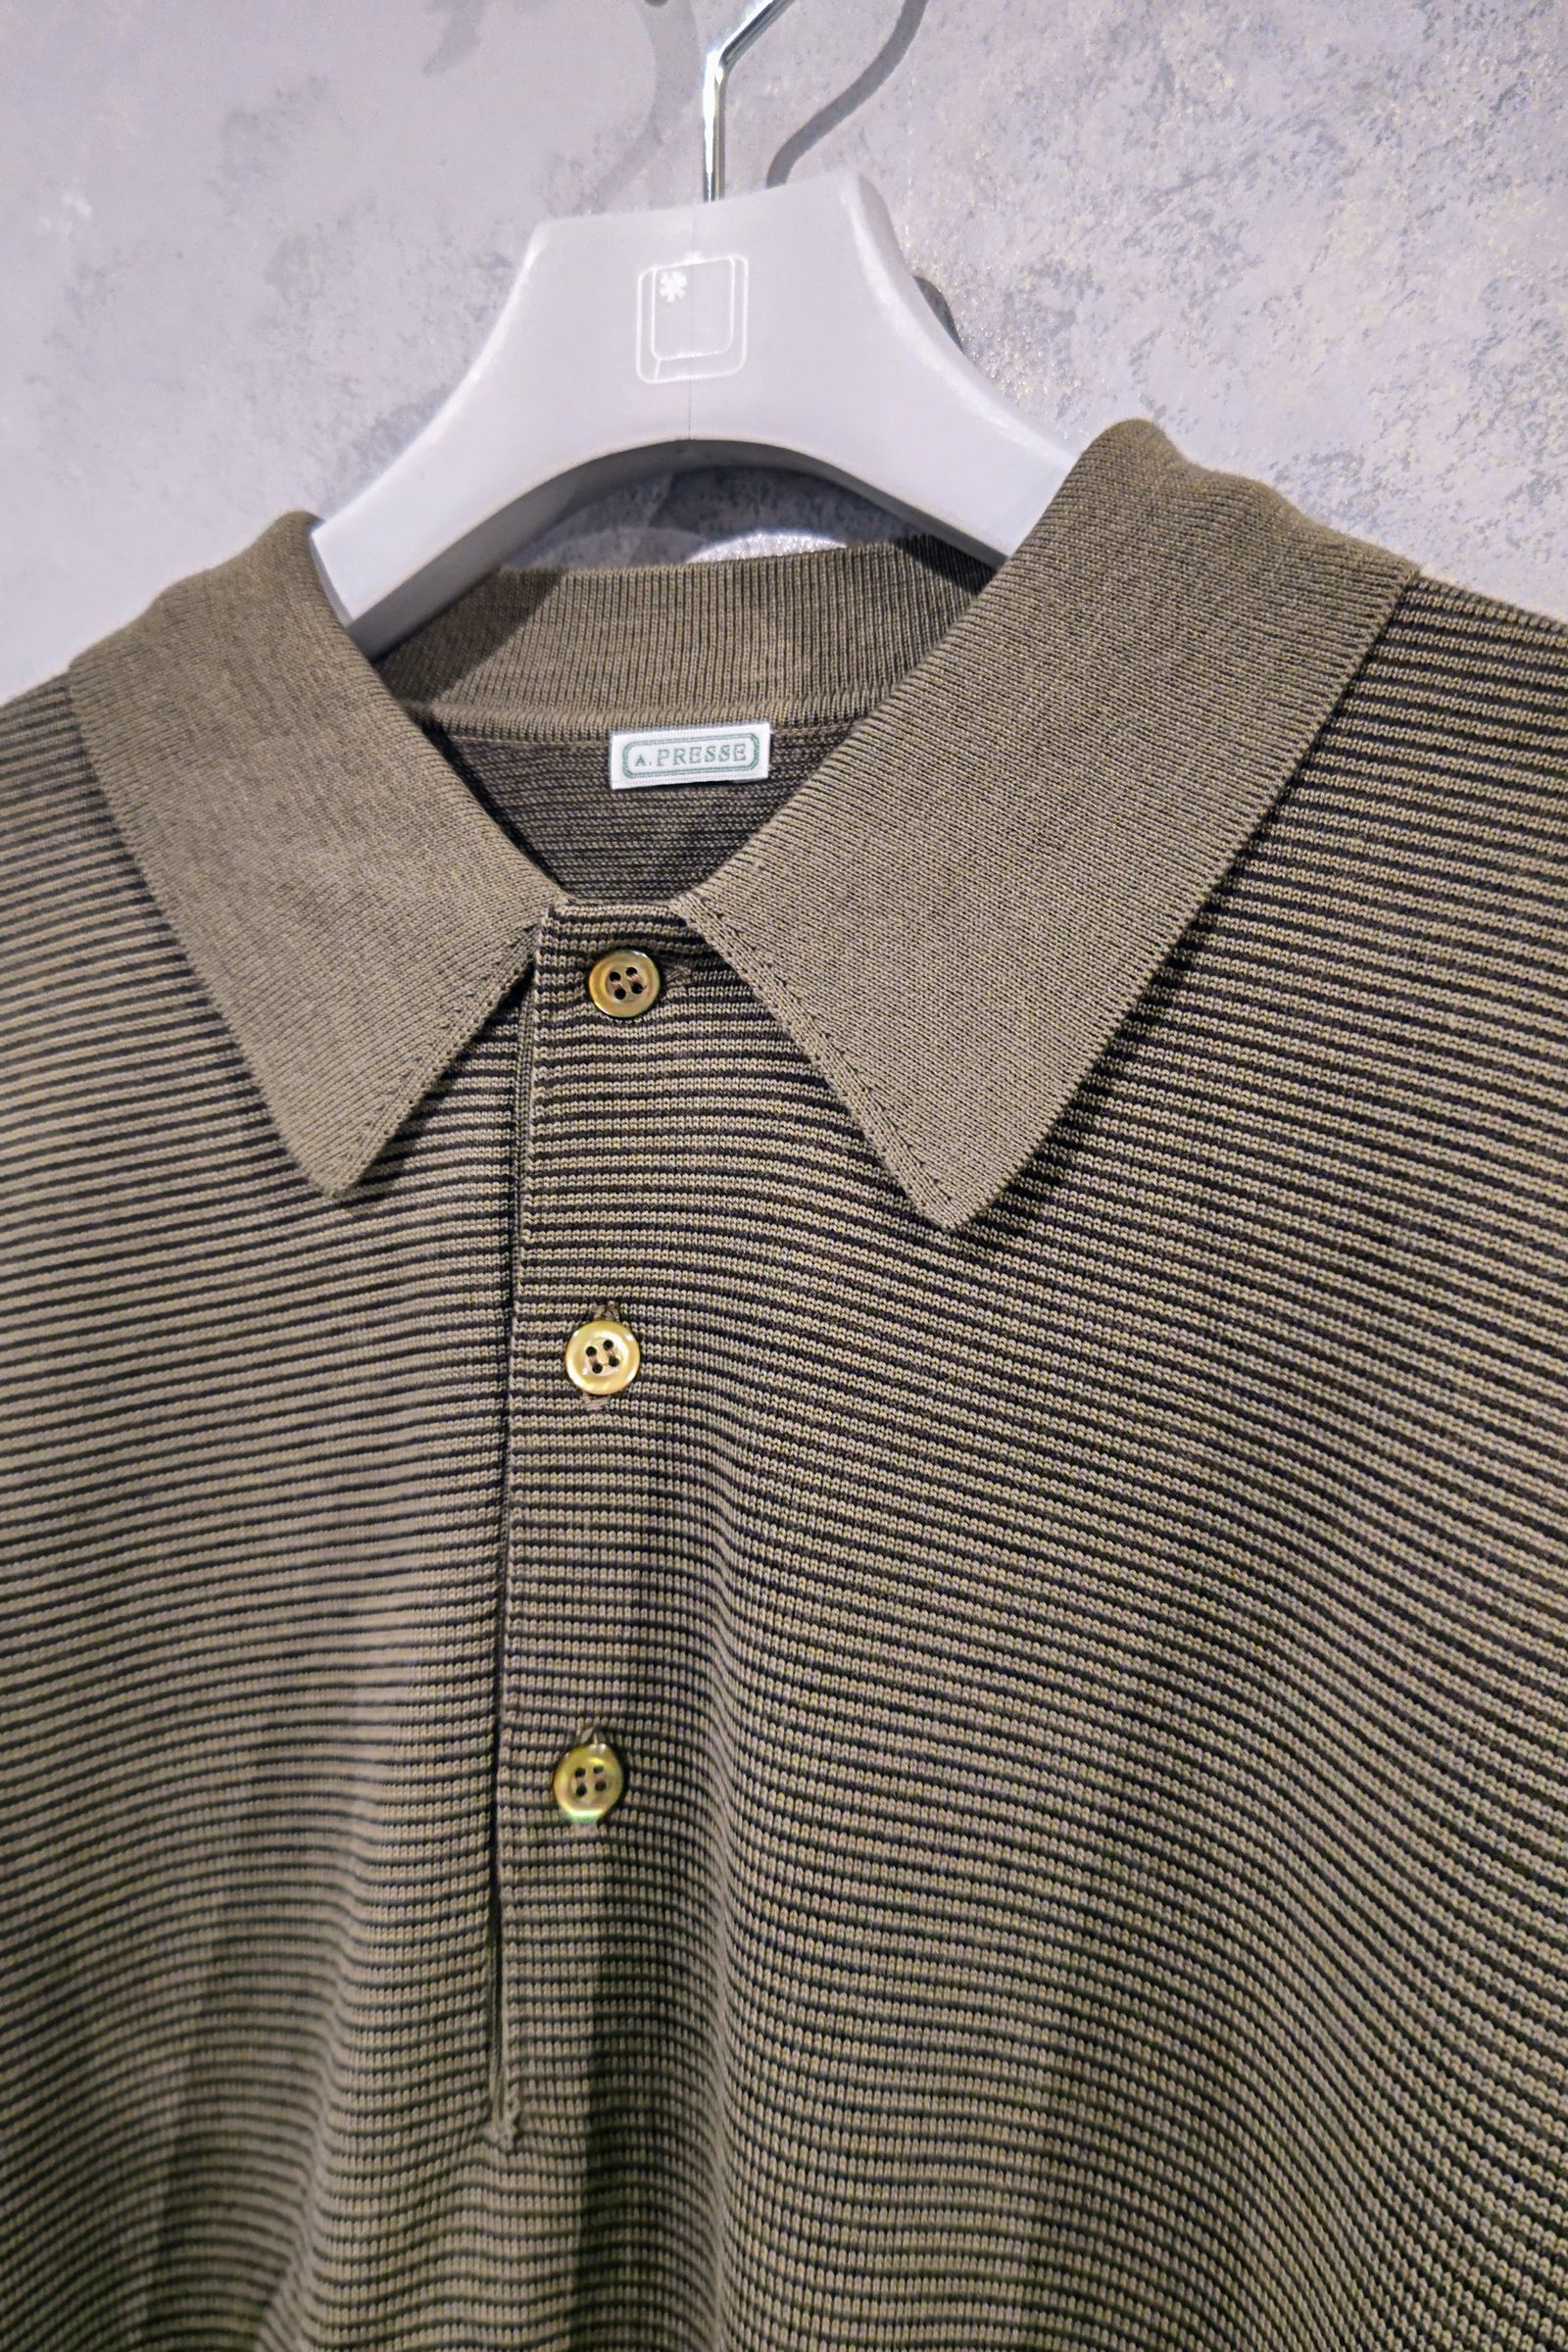 A.PRESSE - L/S ニット ポロシャツ L/S Knit Polo Shirt -stripe